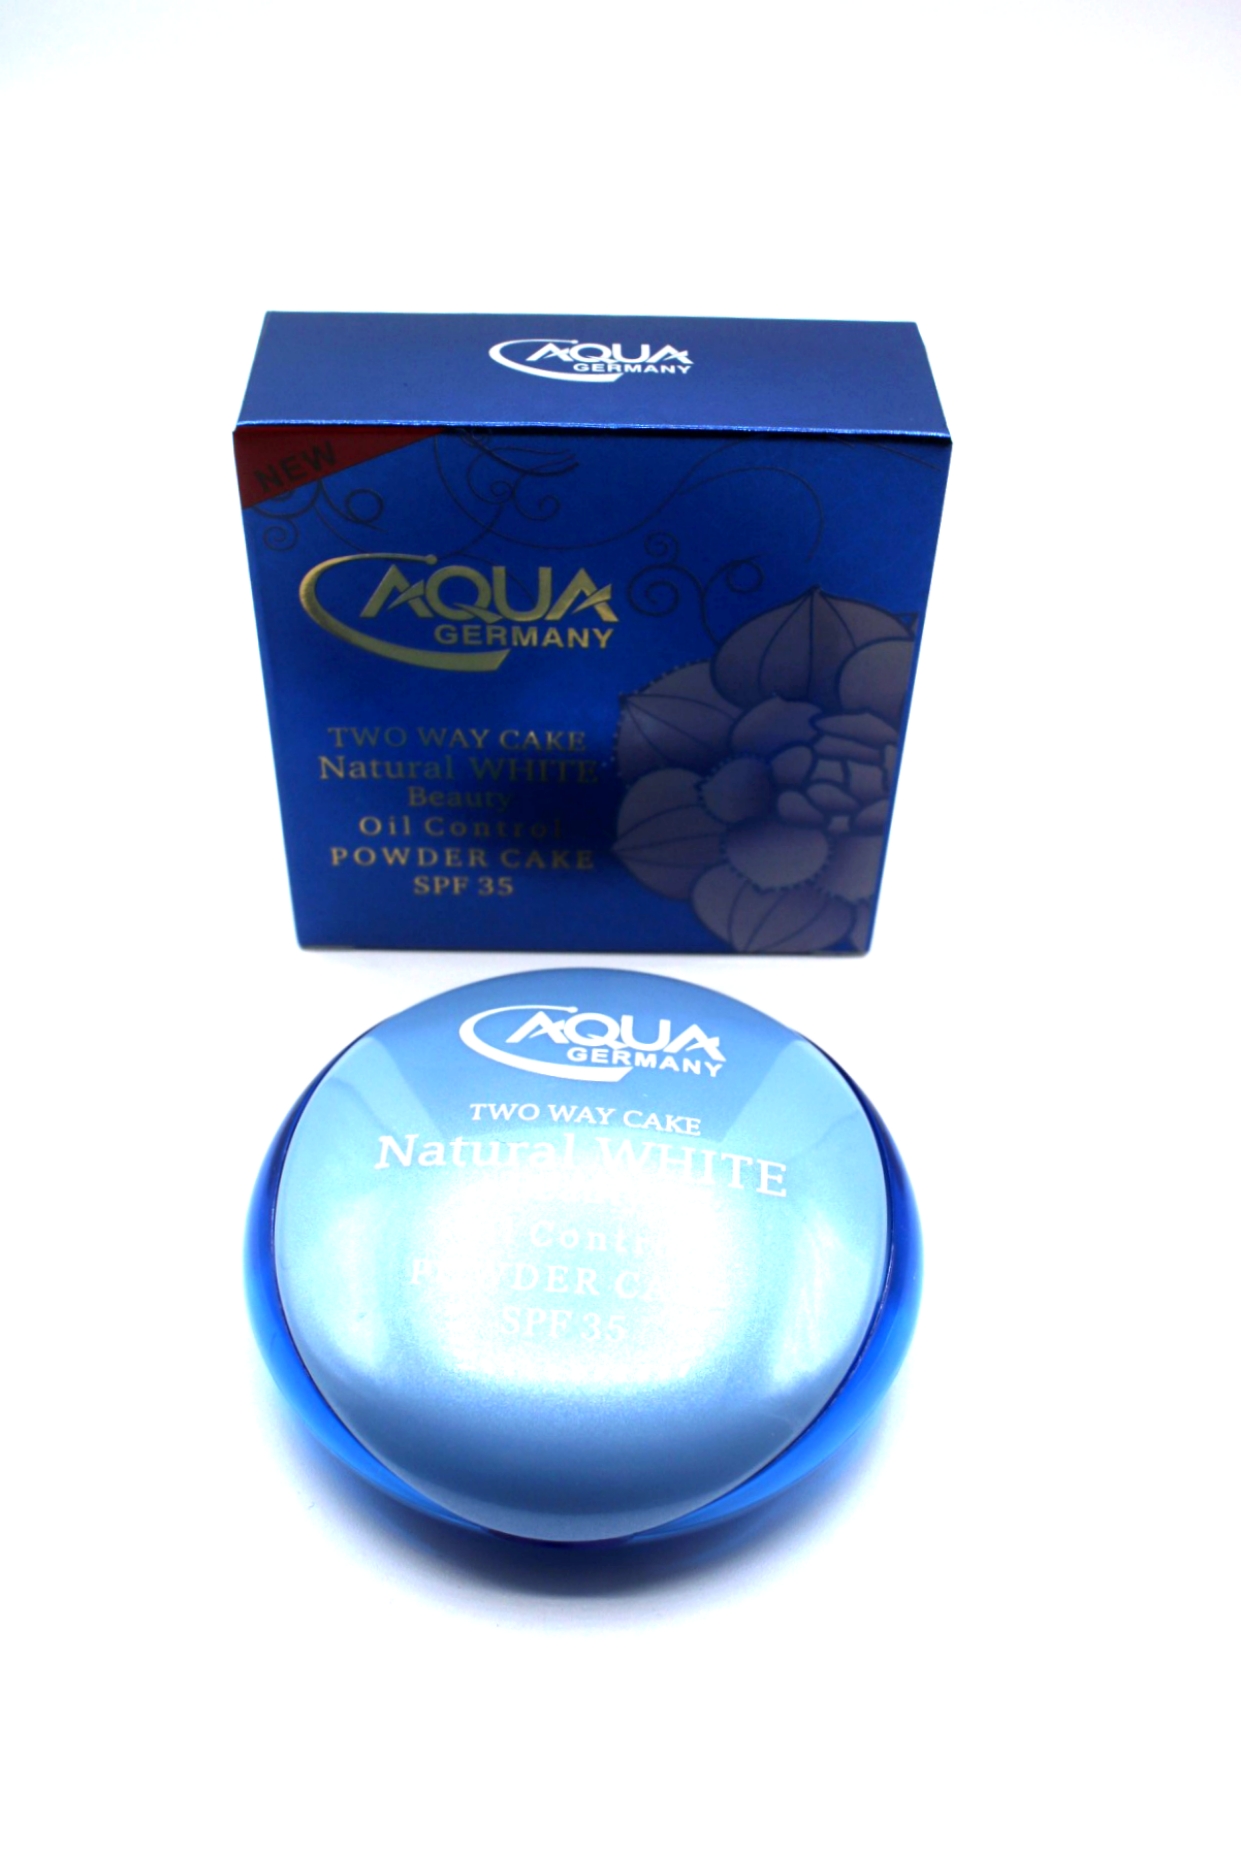 Aqua Color Line  Oil Control  Powder Cake 03 SPF 35